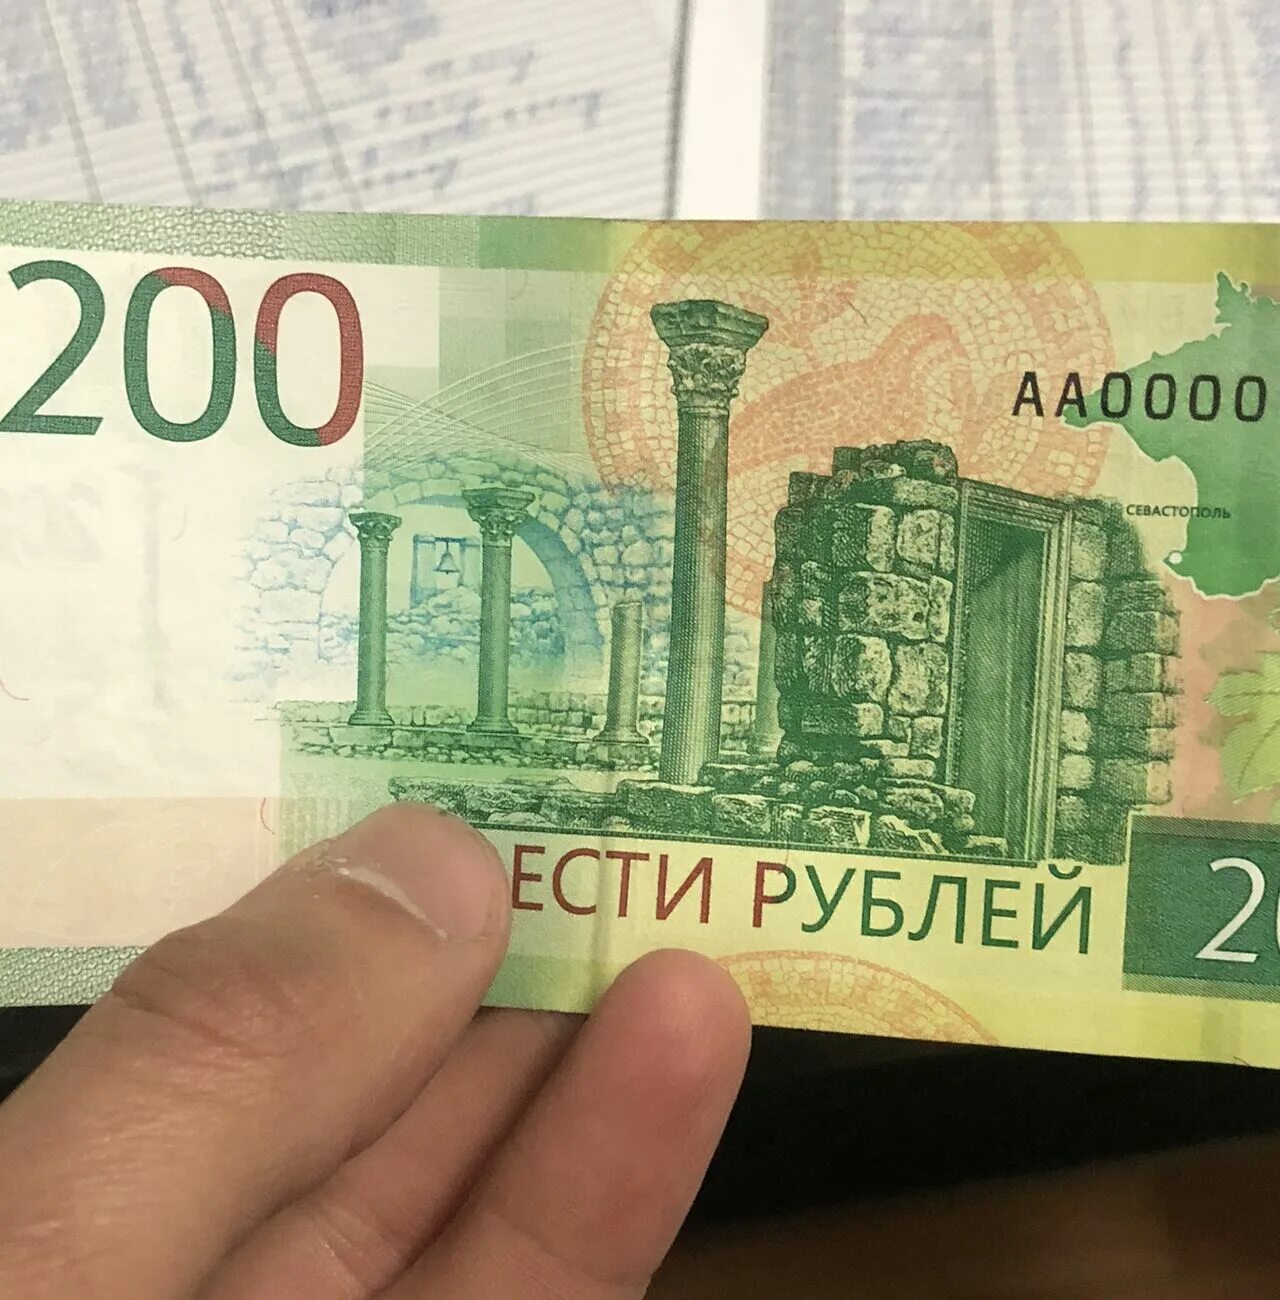 200 рублей. Купюра 200 рублей. 200 Рублей банкнота. Новая 200 рублевая купюра.